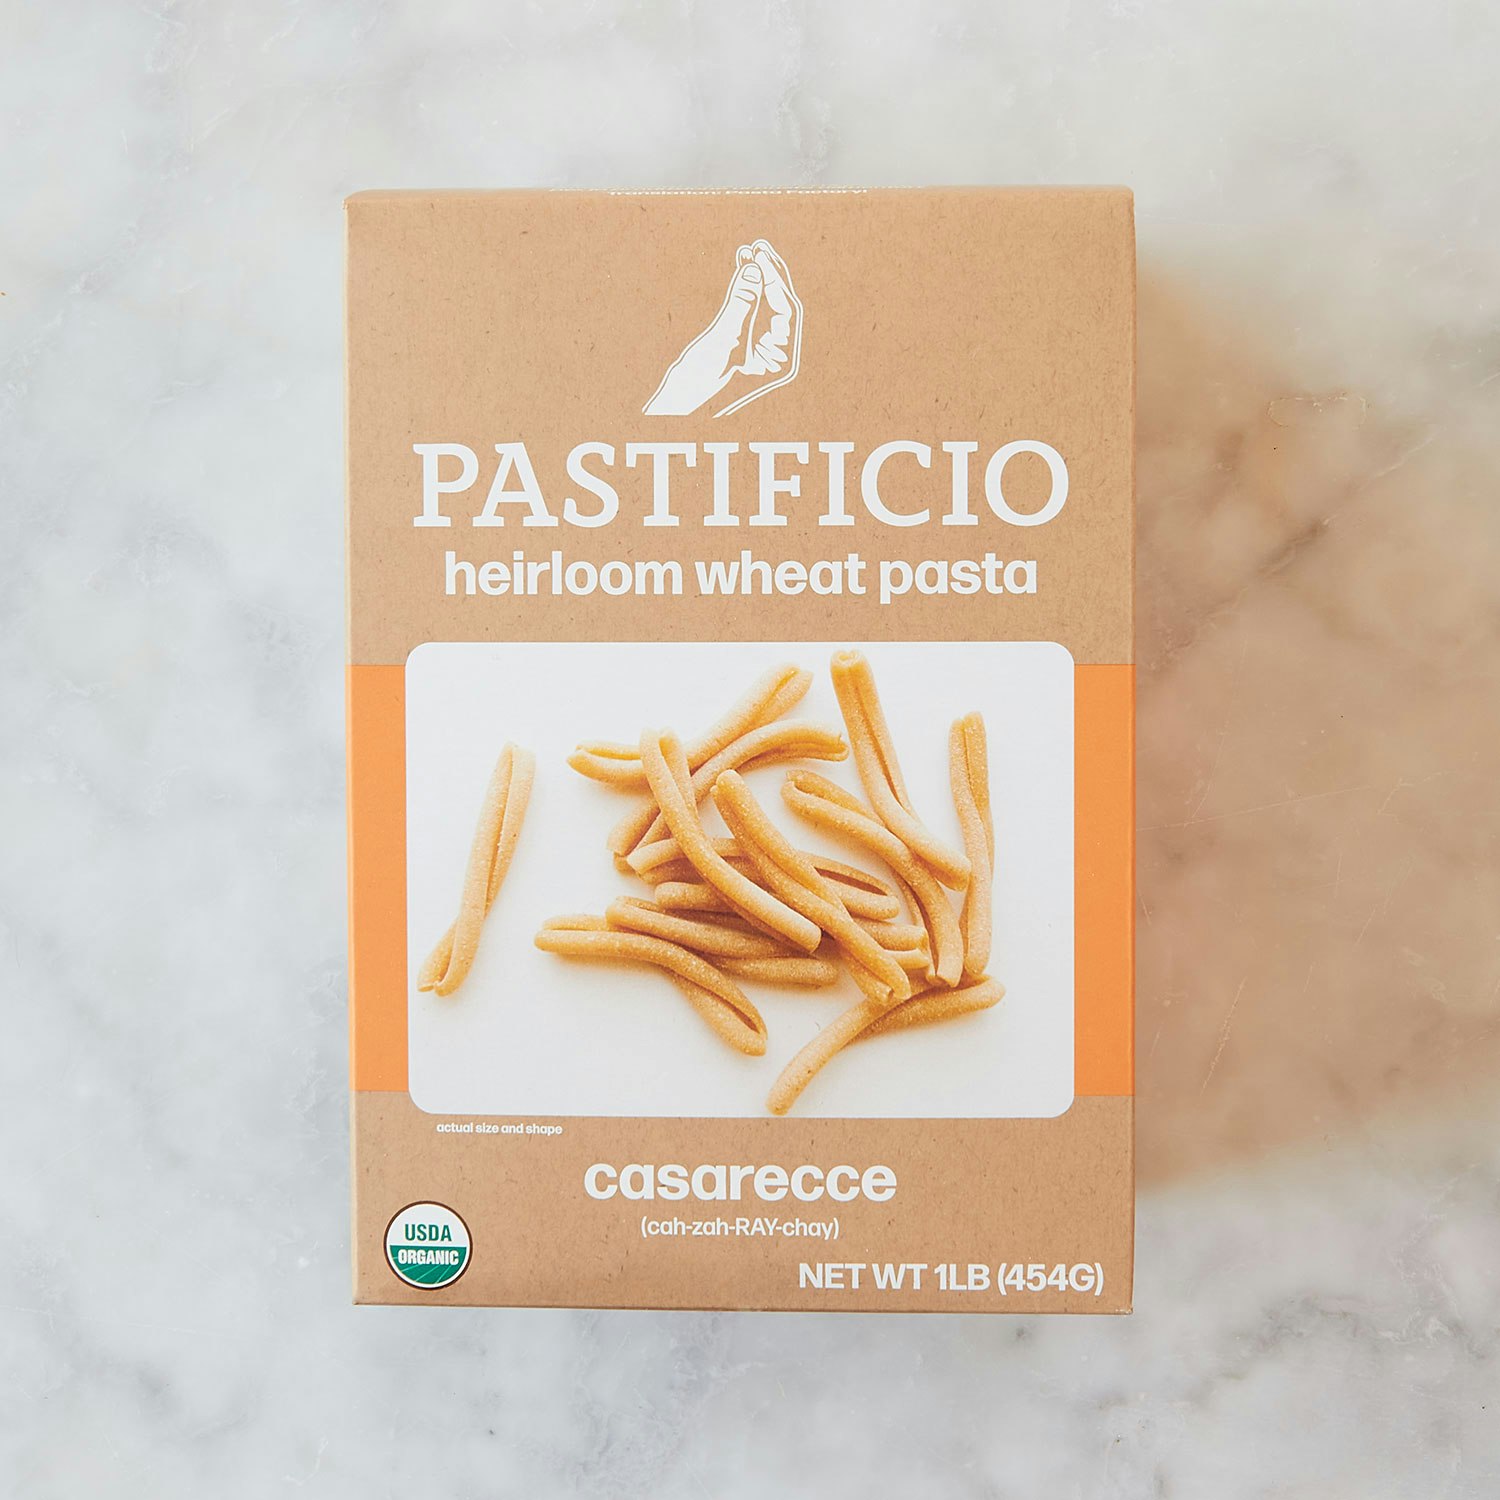 Pastificio-Pasta-Heirloom-Wheat-Casarecce-specialty-foods-123802-01